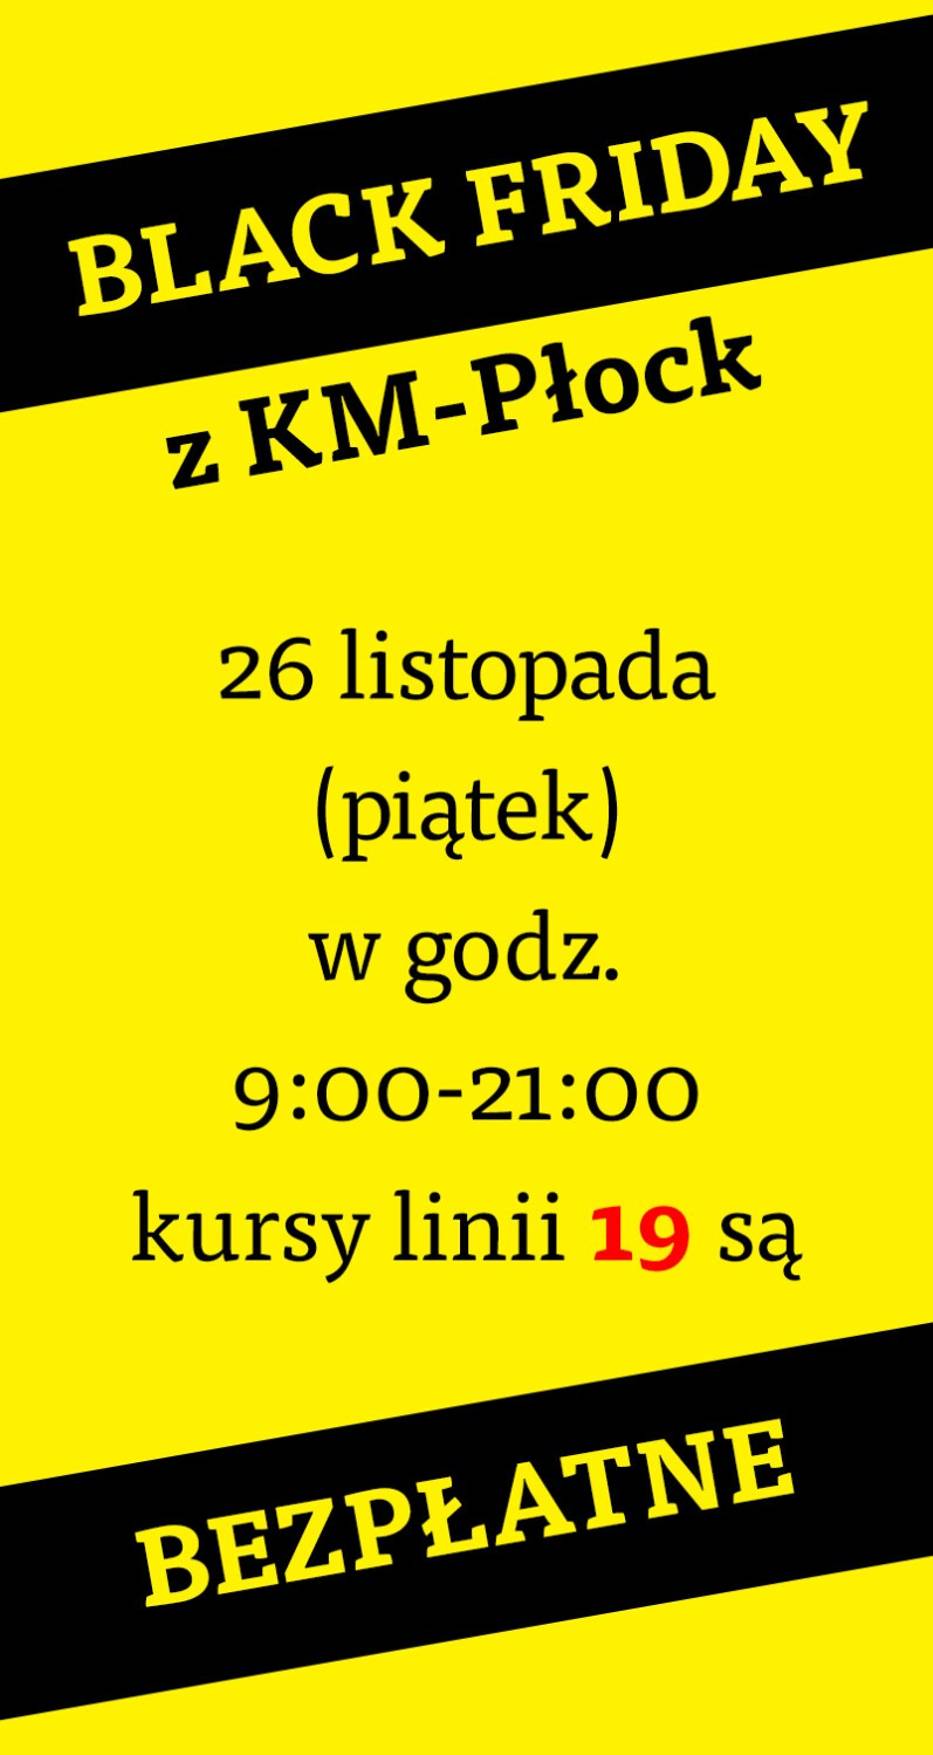 Black Friday. KM Płock wspólnie z Galerią Mazovia oferuje darmowy przejazd linią nr 19